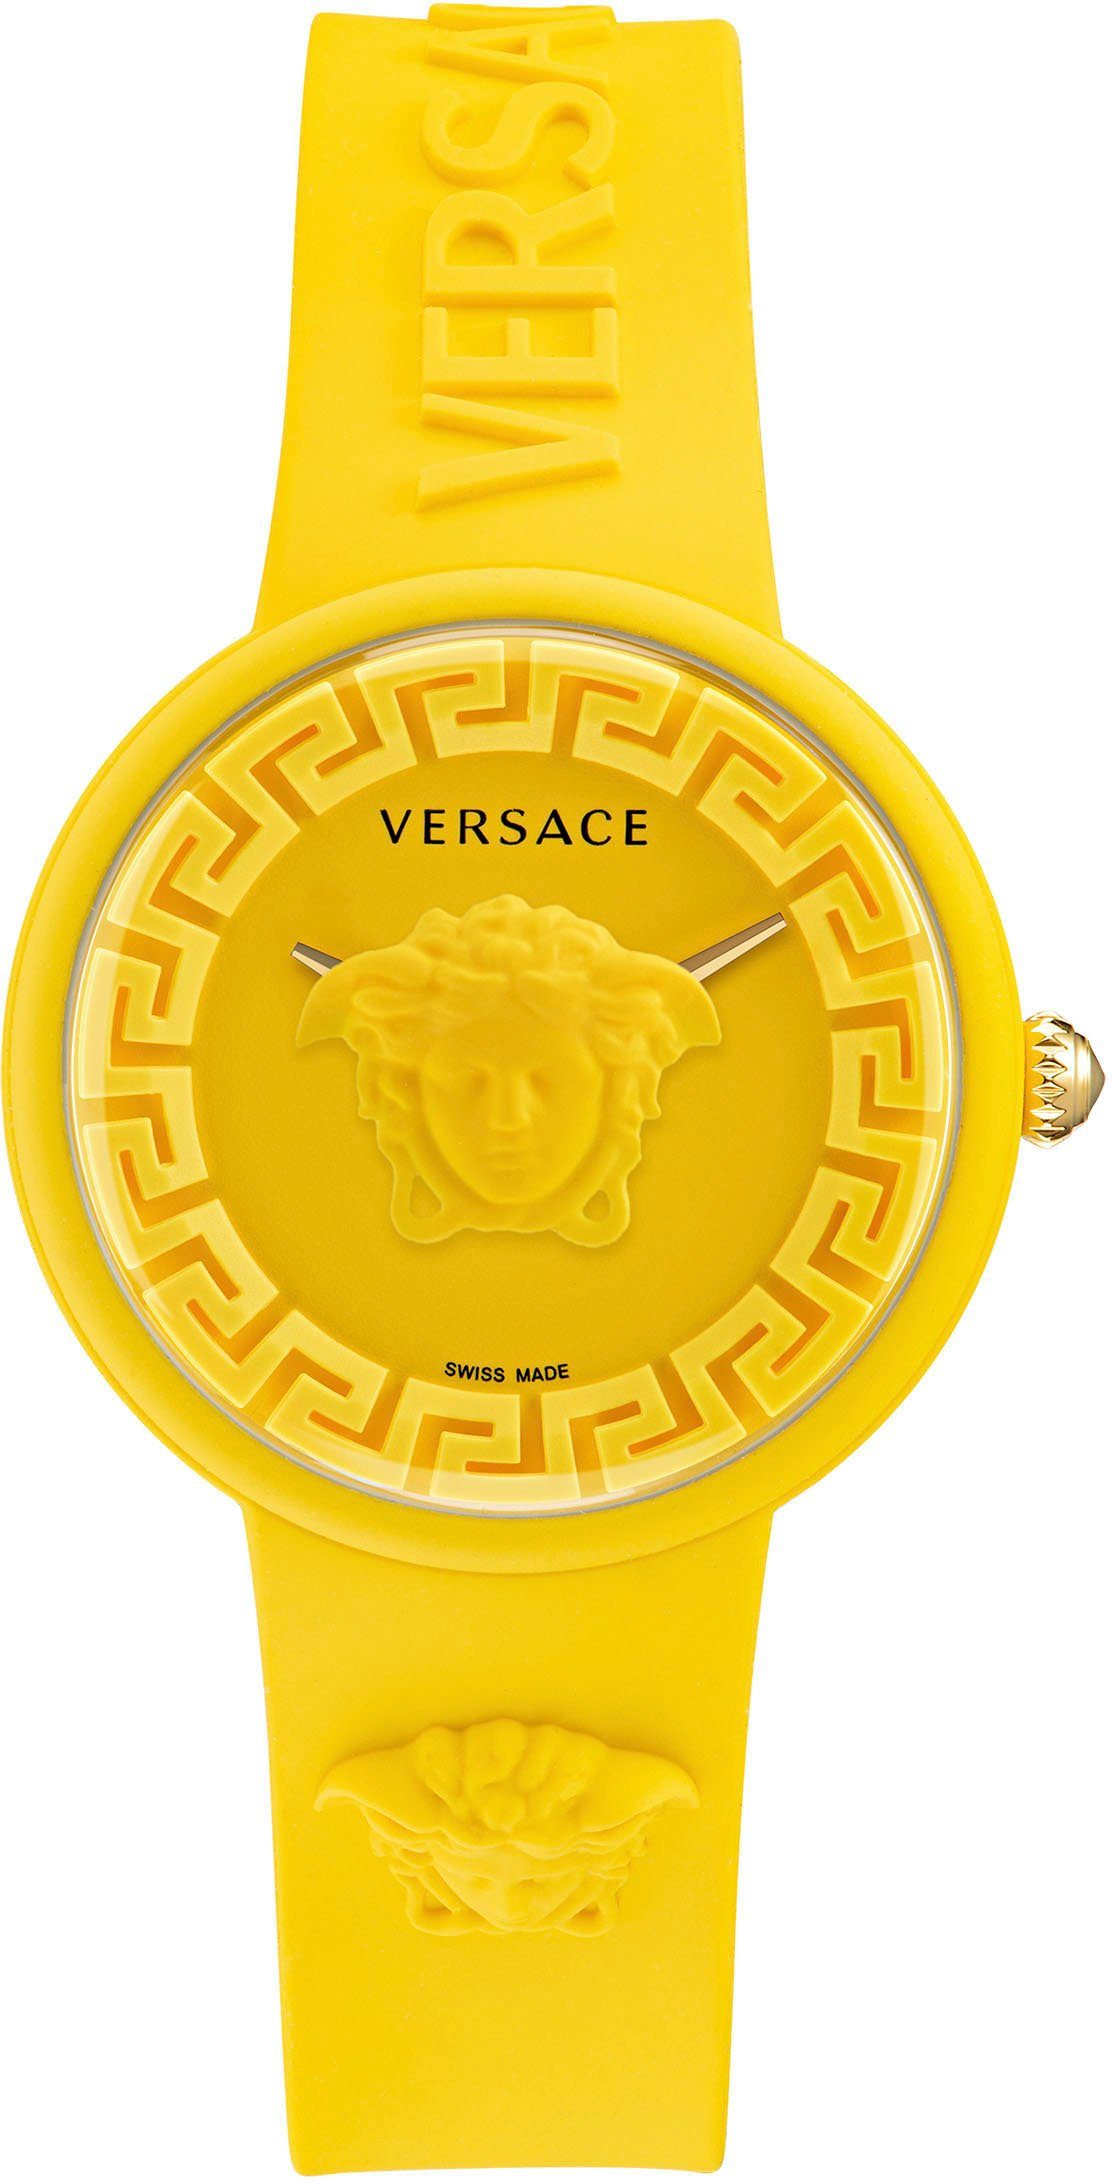 Versace Quarzuhr MEDISA POP, VE6G00523 | Schweizer Uhren